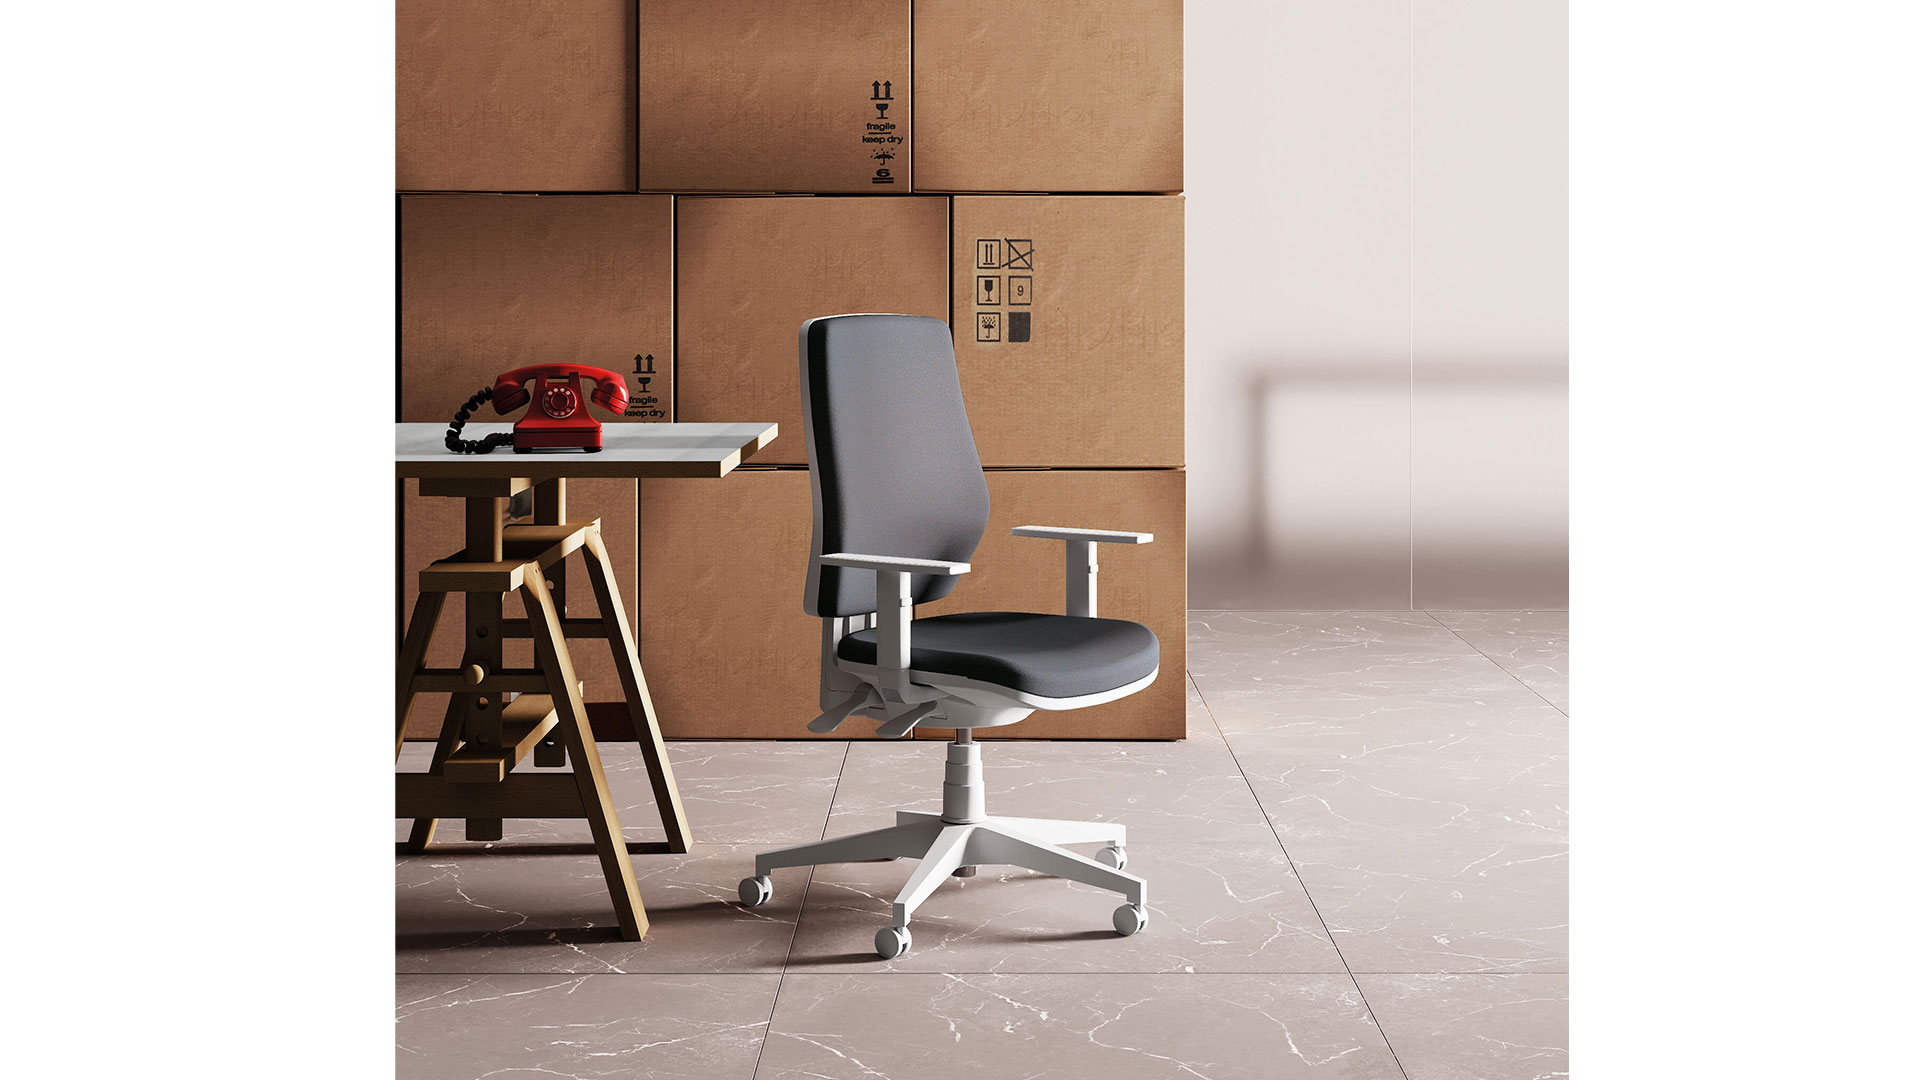 Дизайн кресла с мягкими спинкой и сиденьем разработал Массимо Косталья